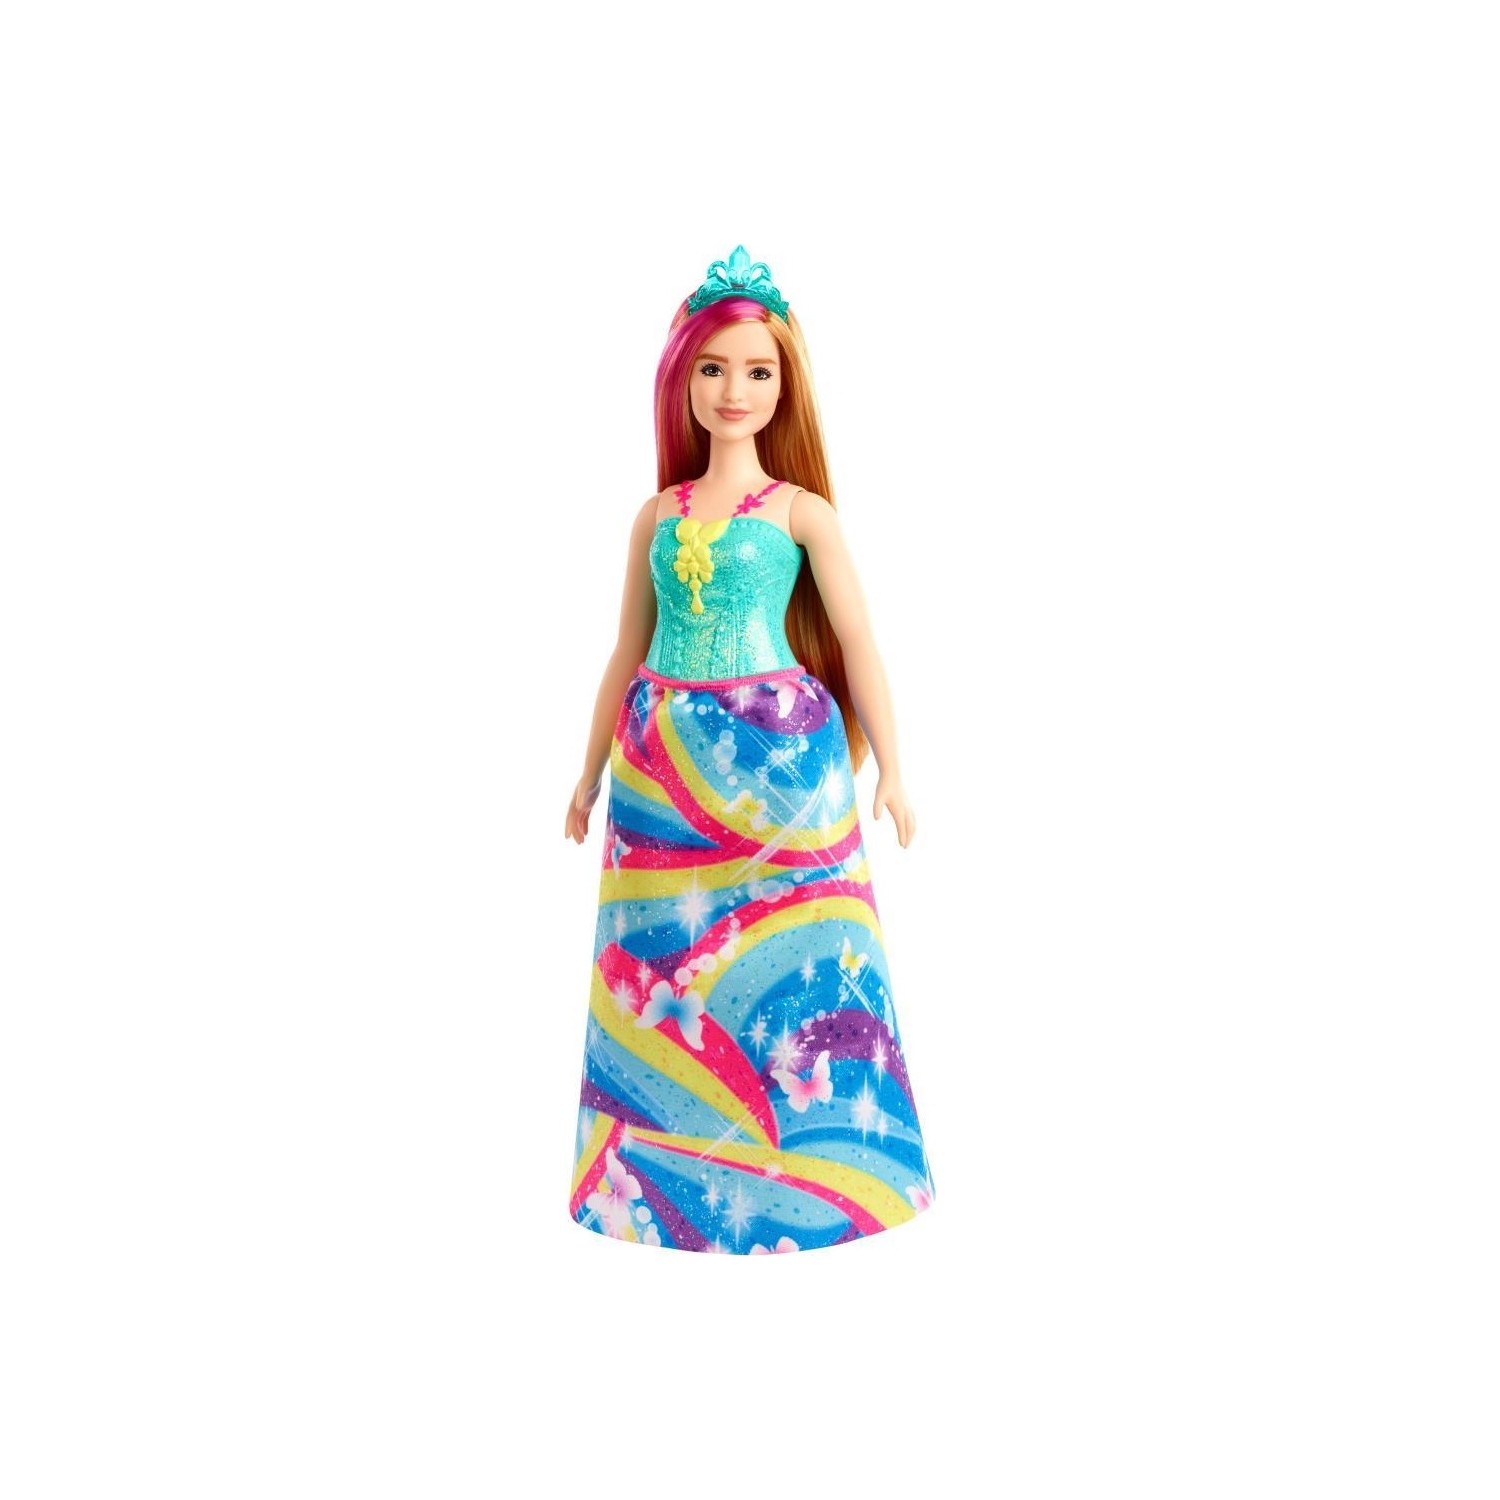 Кукла Barbie Dreamtopia Princess Dolls GJK16 кукла barbie принцесса 4 gjk16